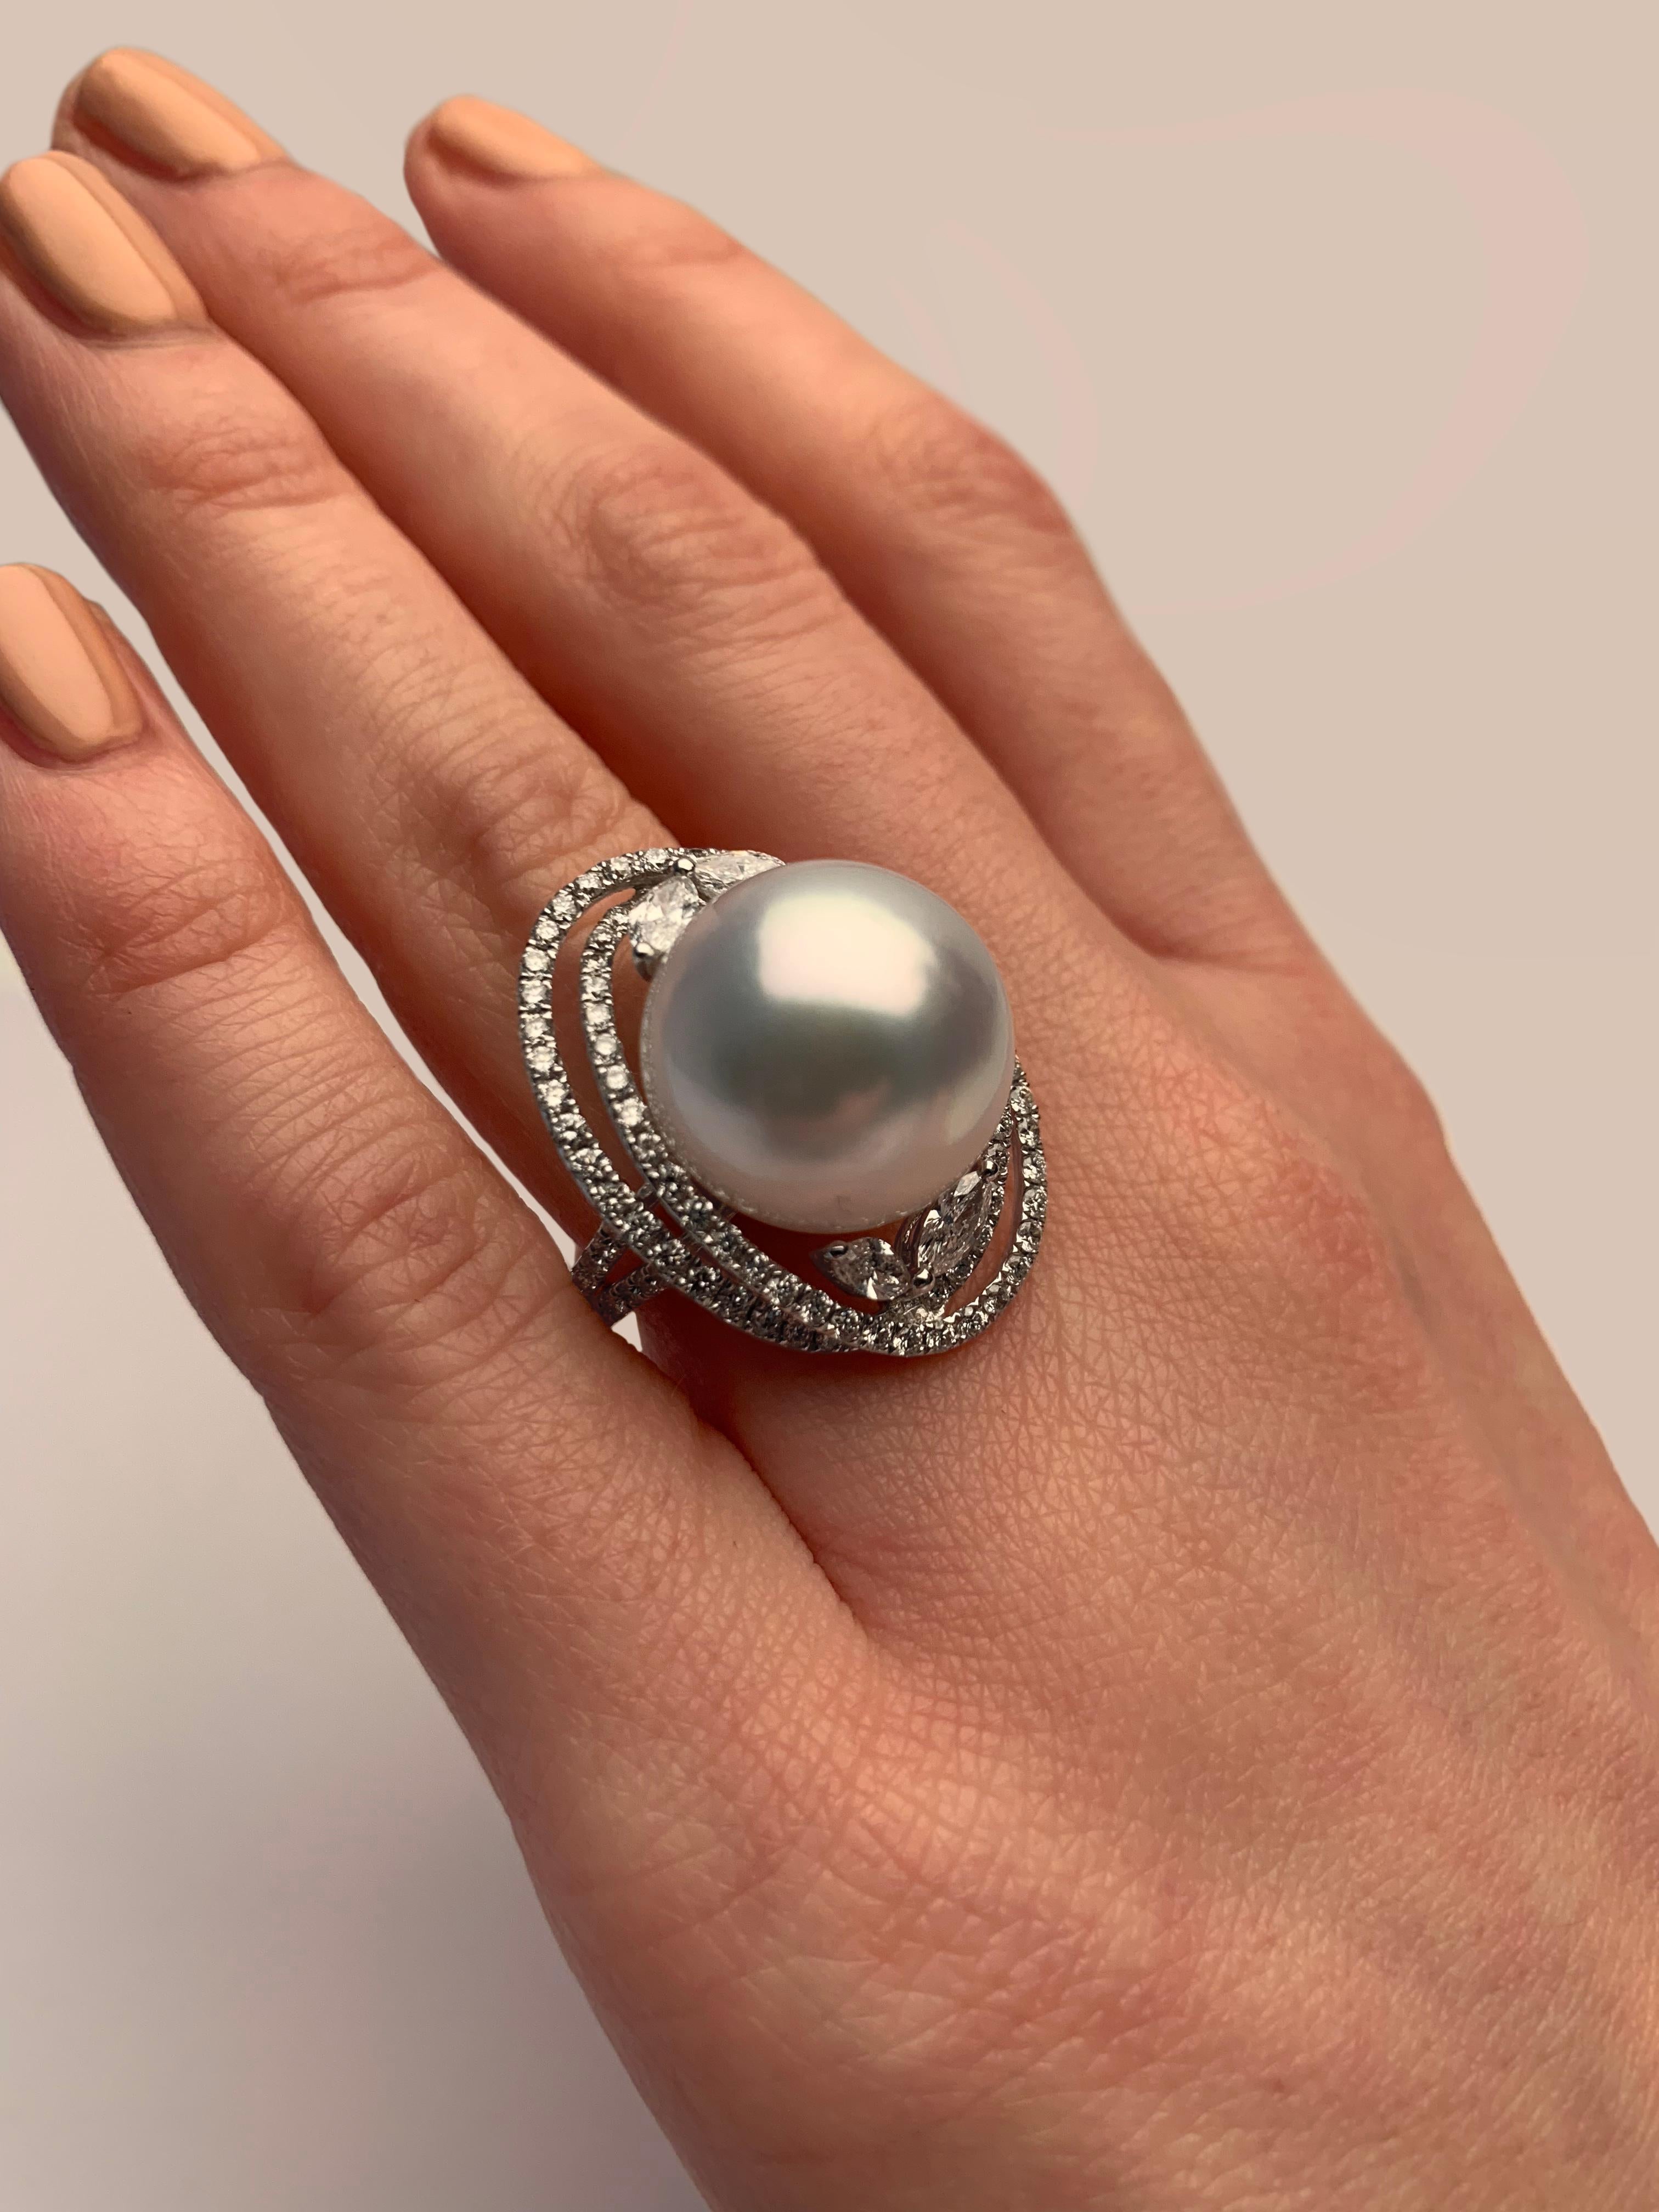 Dieser elegante Ring von Yoko London besticht durch eine edle Südseeperle, die in ein kunstvolles Arrangement aus runden und marquise geschliffenen Diamanten eingefasst ist. Dieser wunderschöne Ring ist in 18 Karat Weißgold gefasst, um den Glanz der